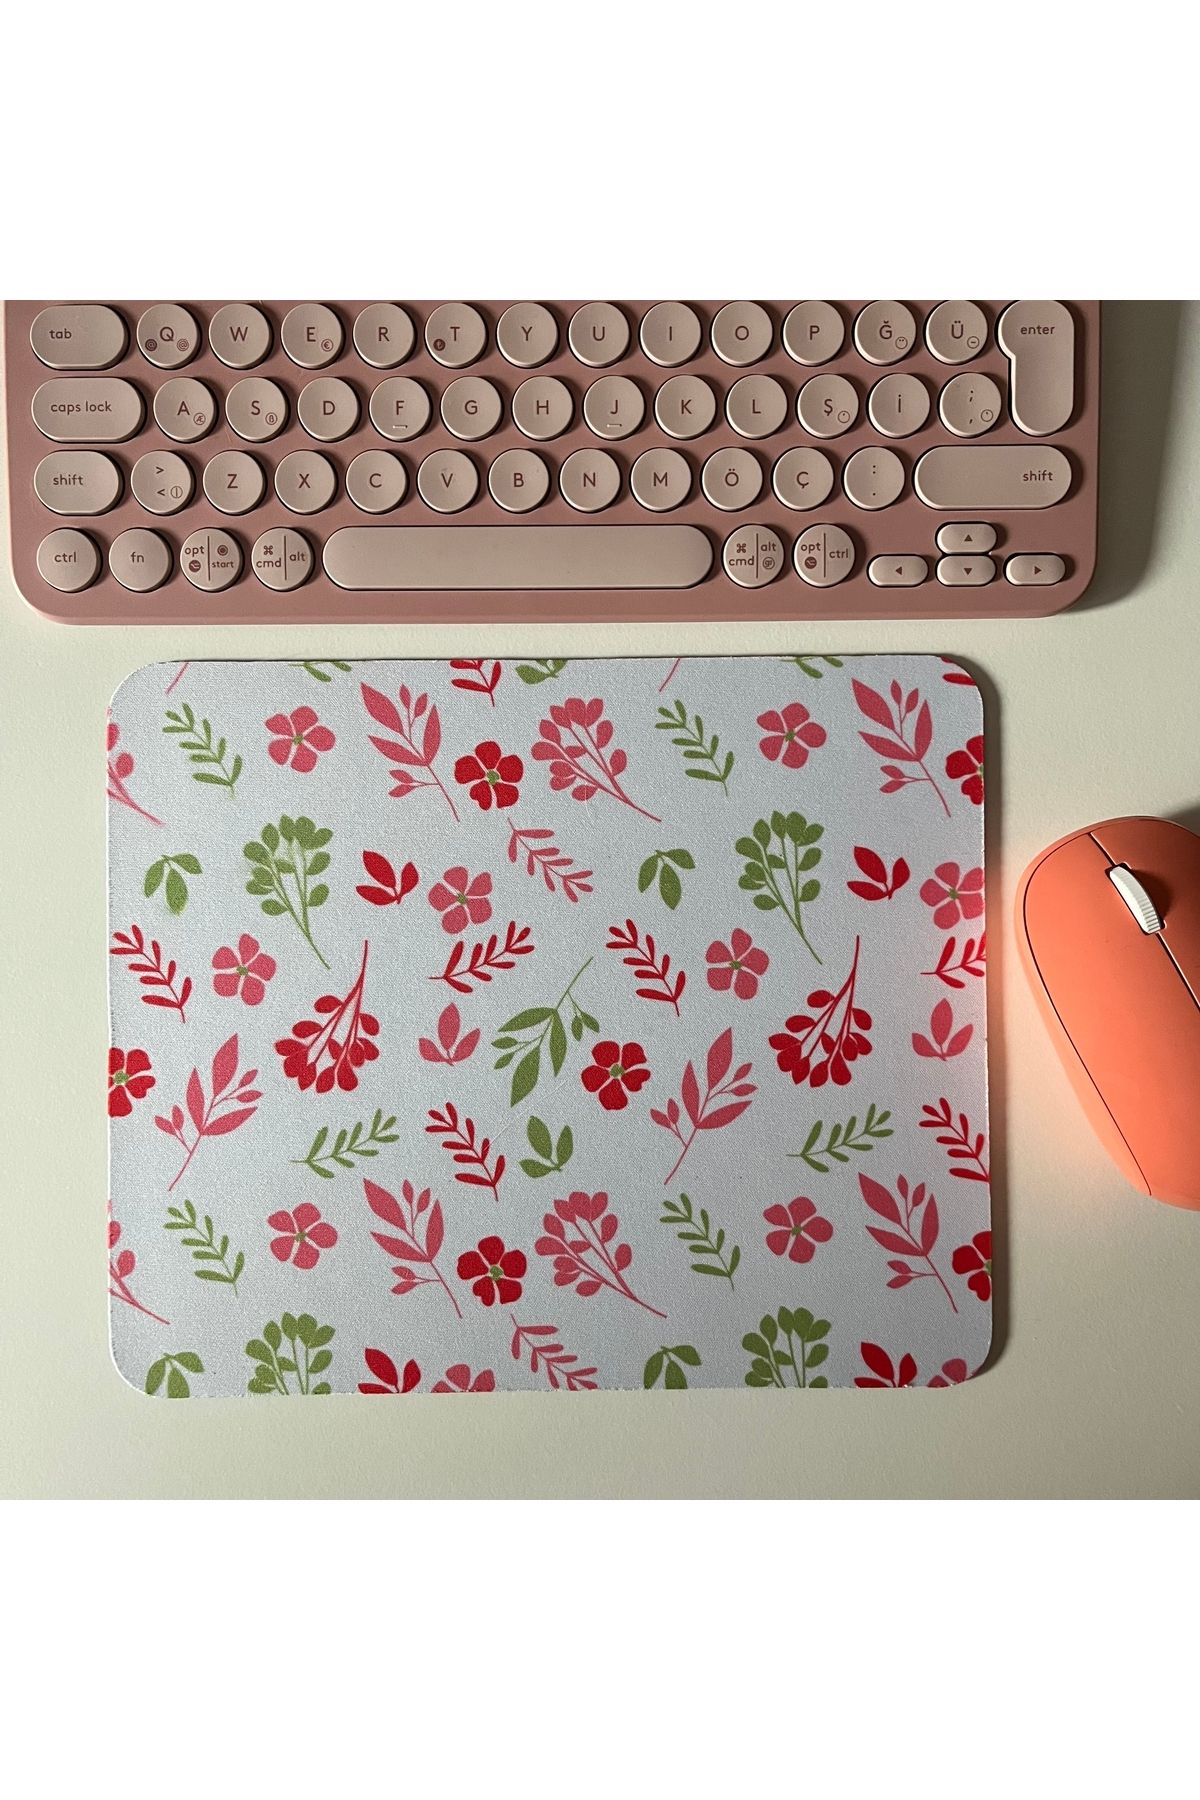 Duxy Çiçek Desenli Mouse Pad, 23x19 cm, Kaymaz Taban, Ev, Ofis ve Oyun için Rahat ve Yumuşak Mousepad